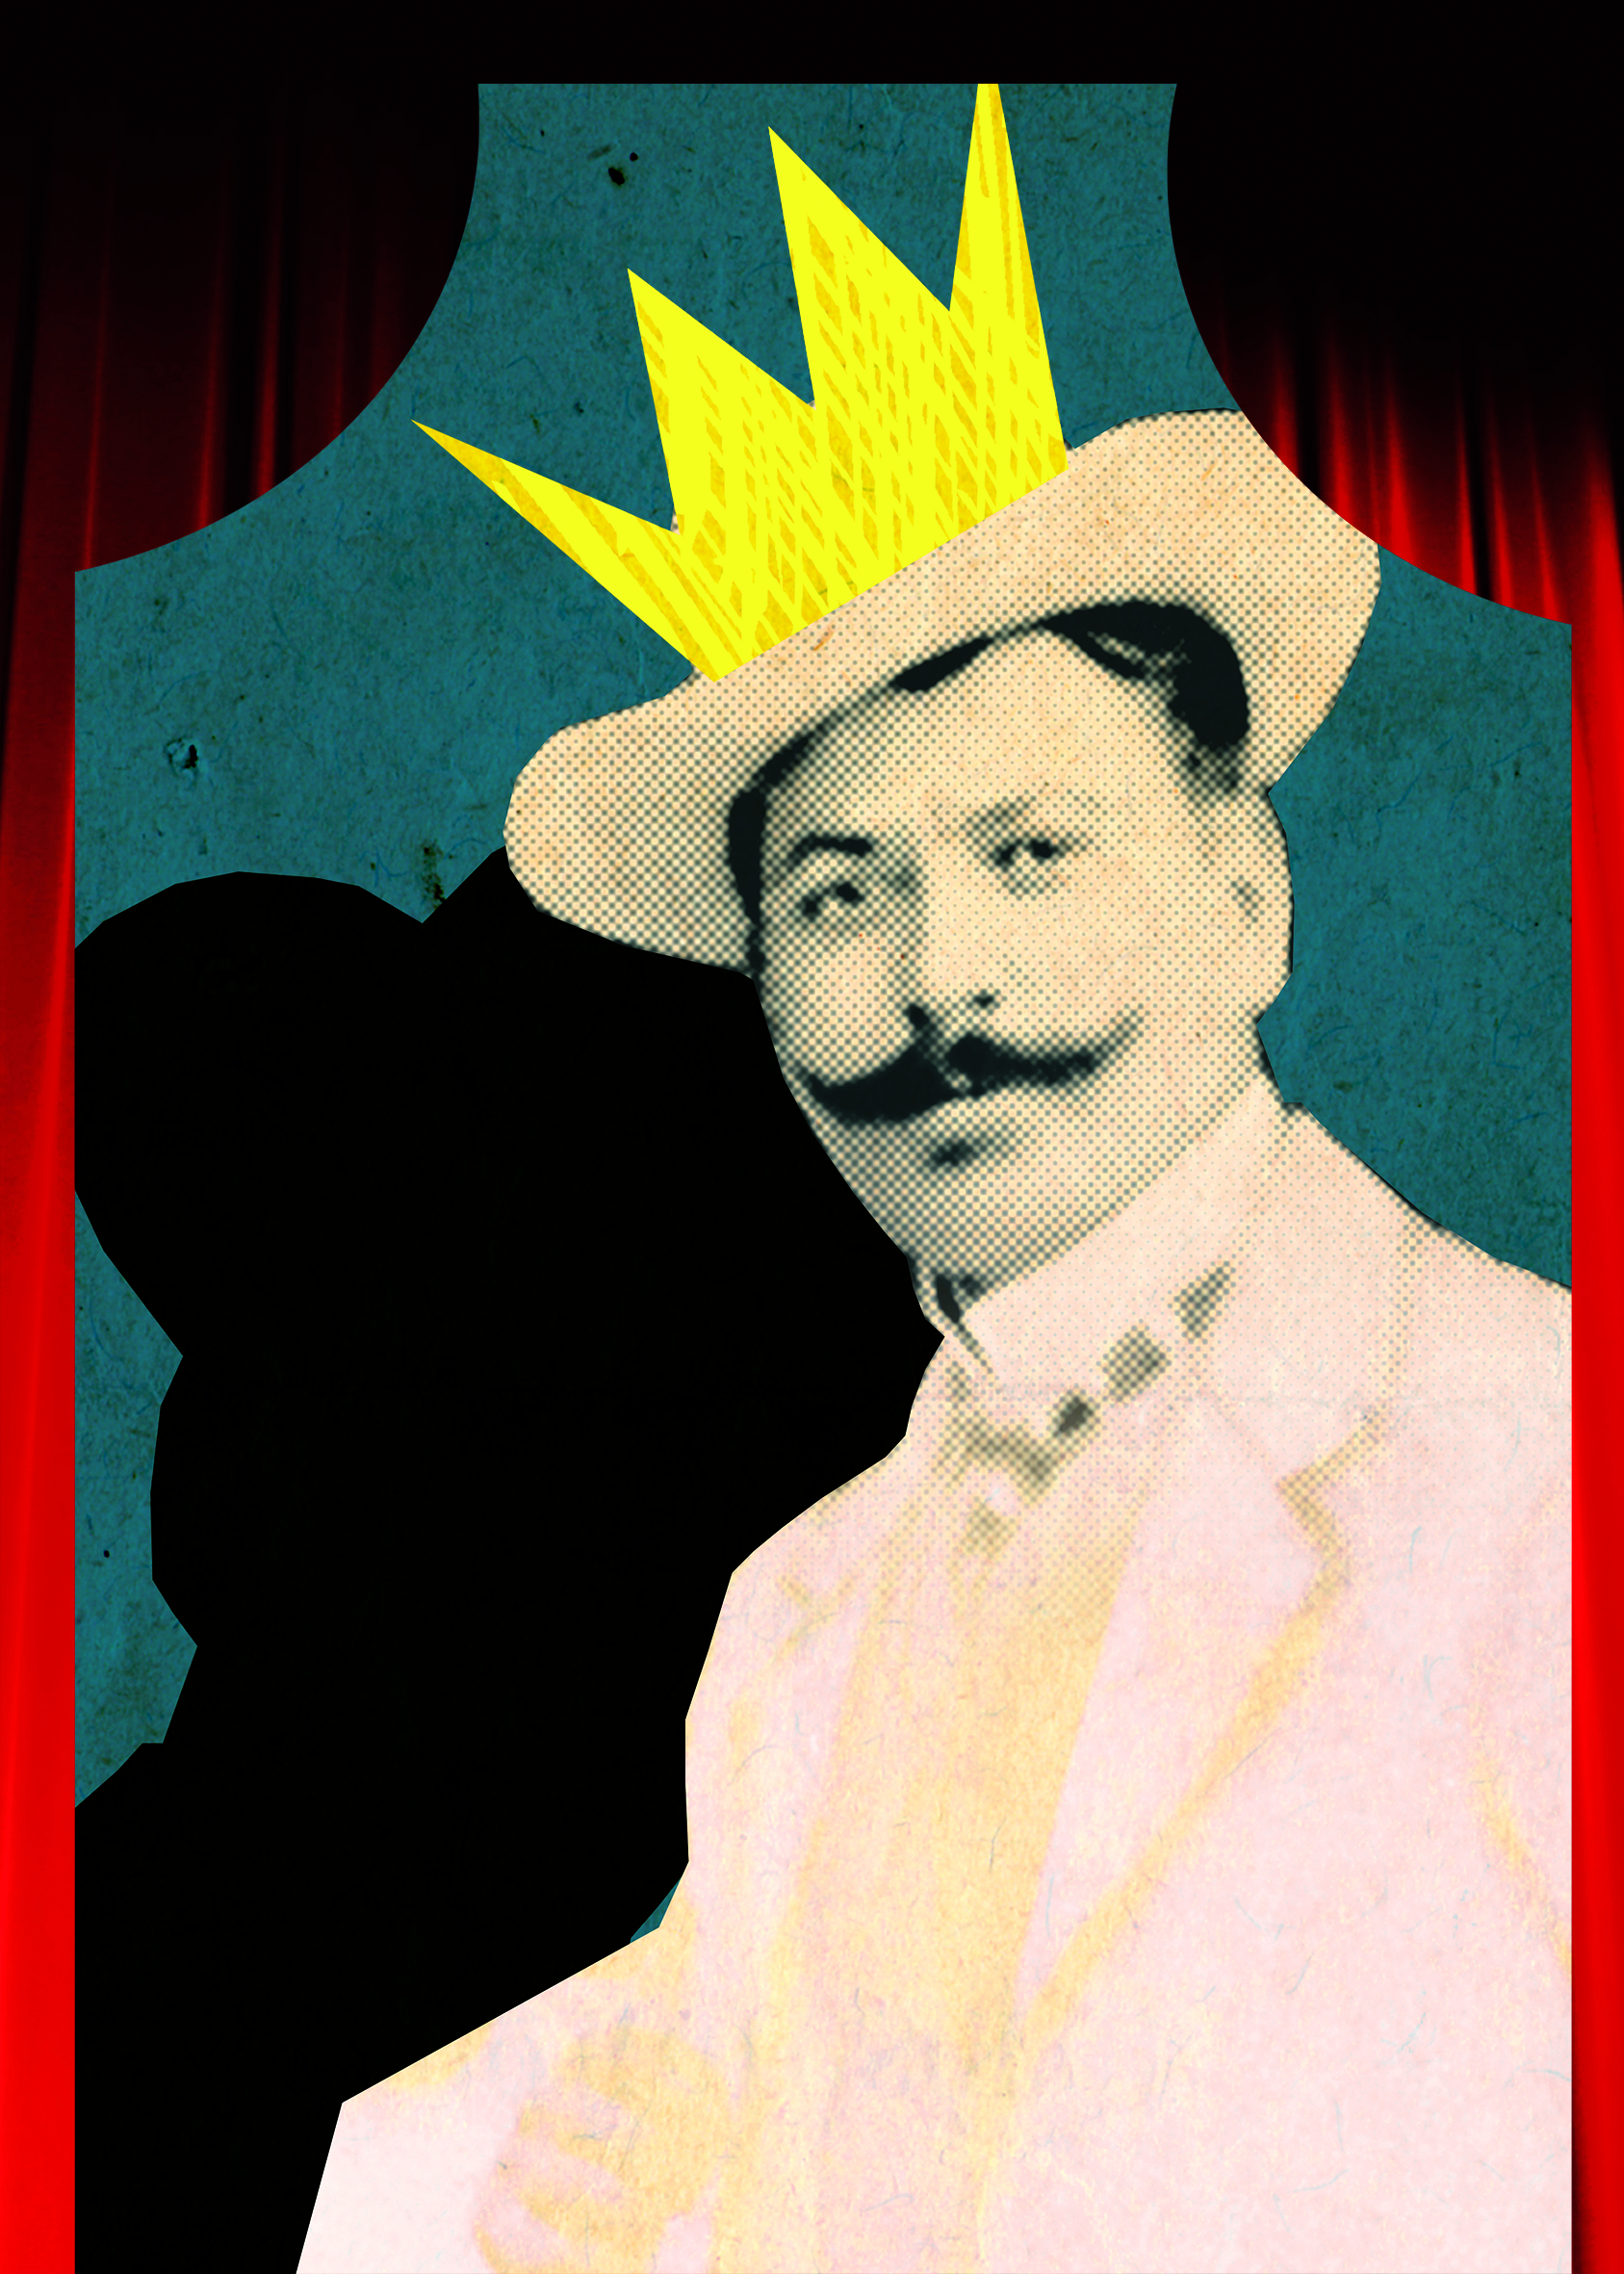 plakat za promociju fenomena dečje opere na kojem je fotografija čoveka sa brkovima, sa nacrtanom zlatnom krunom iznad šešira